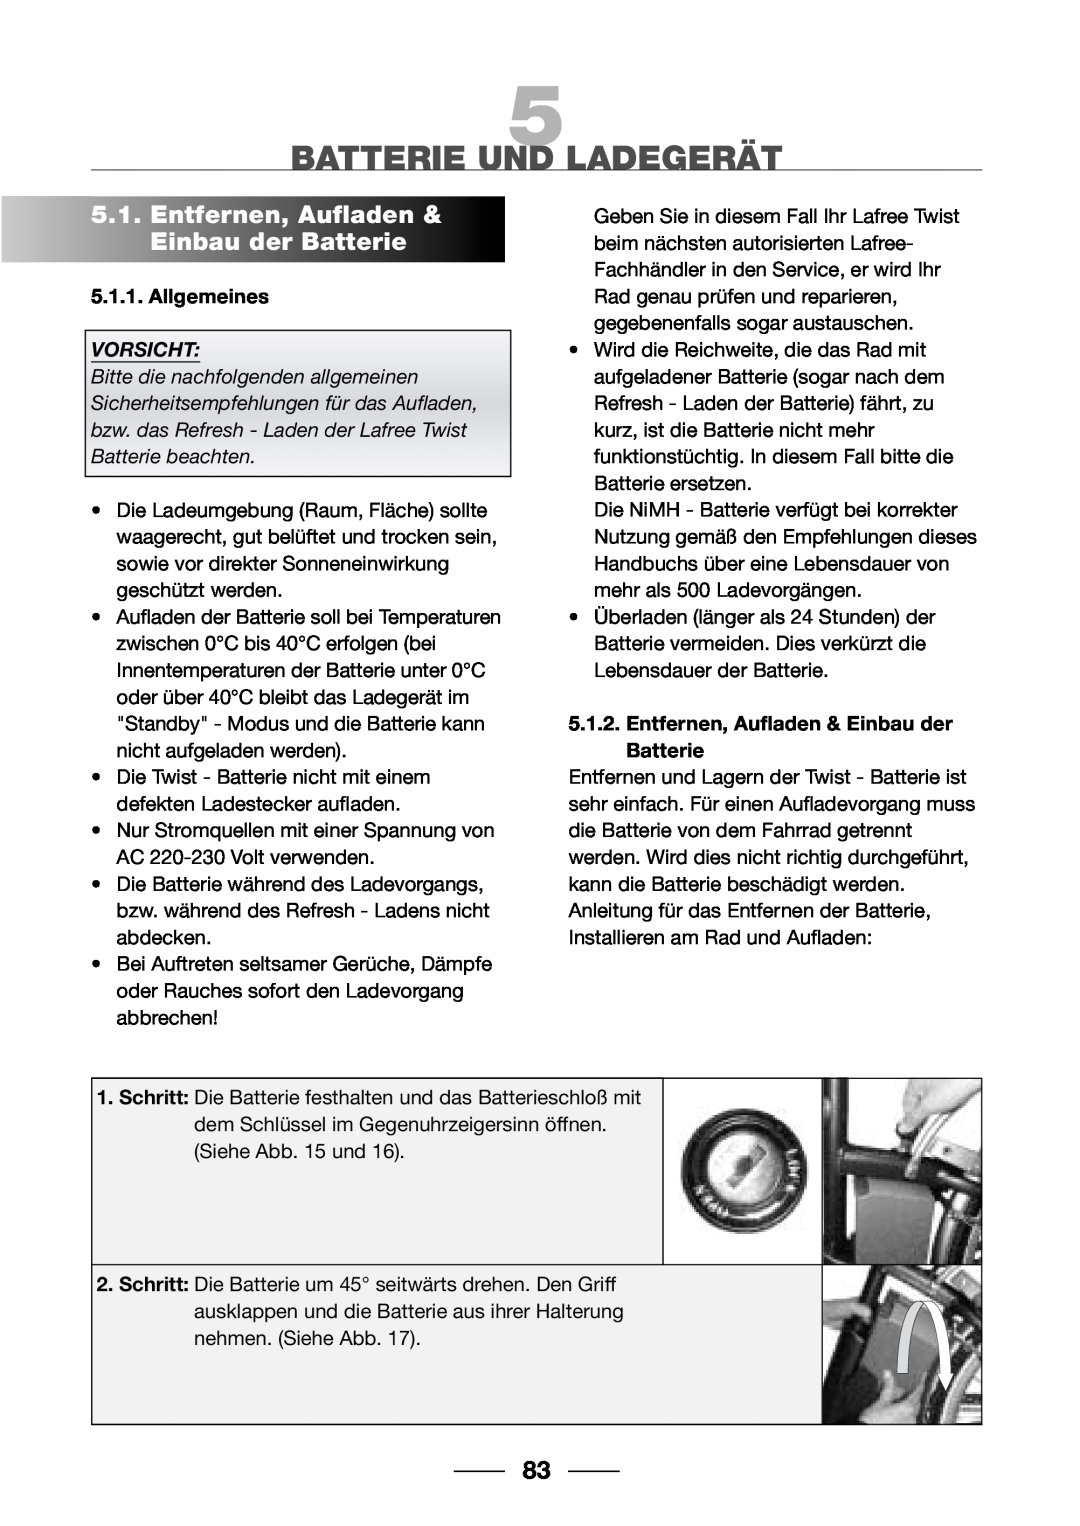 Giant 2002 Motorized Bicycle Batterie Und Ladegerät, Entfernen, Aufladen & Einbau der Batterie, Allgemeines, Vorsicht 